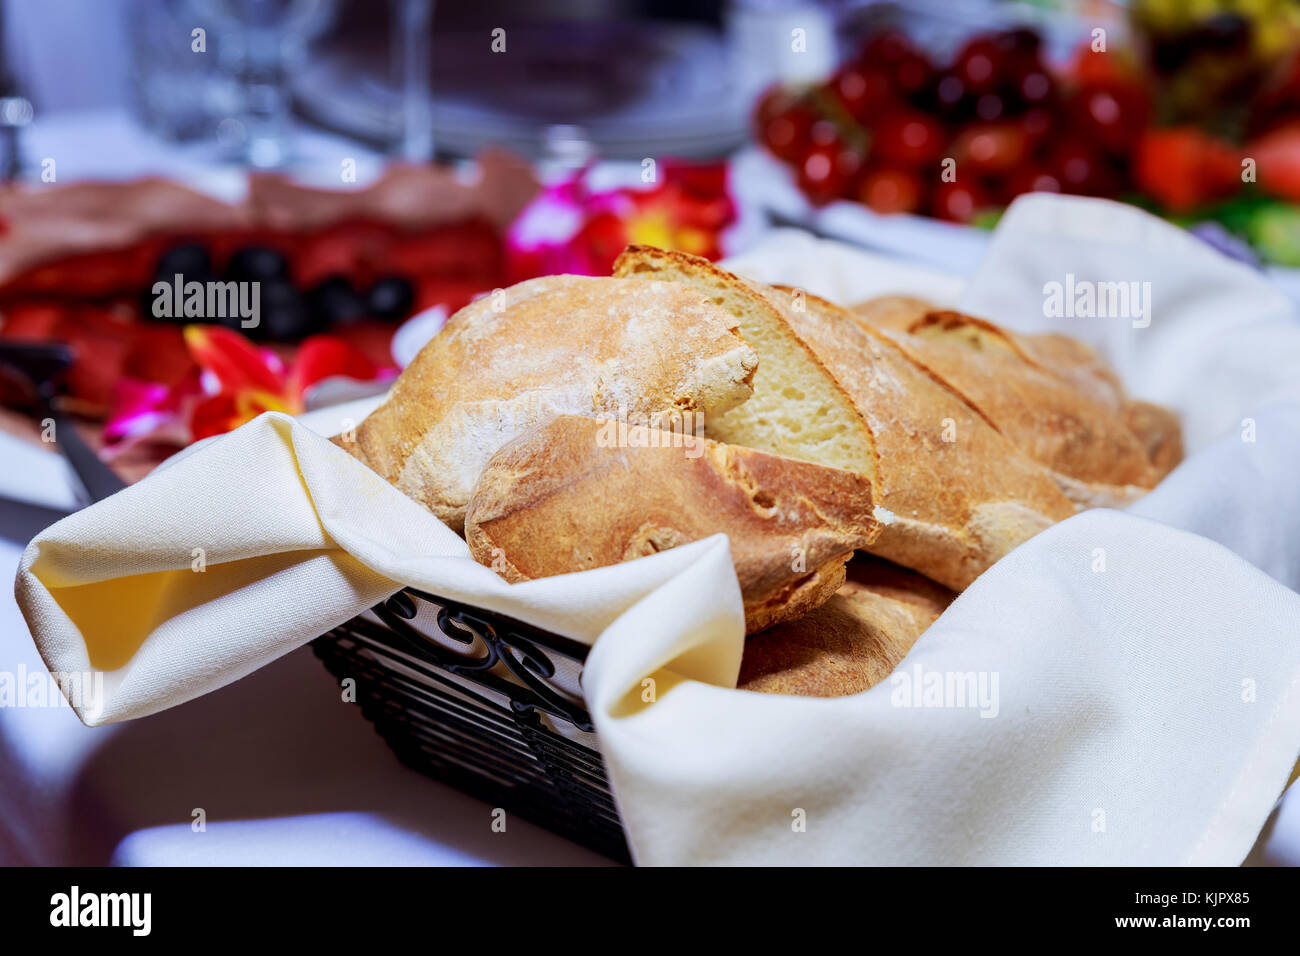 Nahaufnahme Blick auf frisches knuspriges Brot in einem Korb restaurant Brot auf dem Tisch Stockfoto